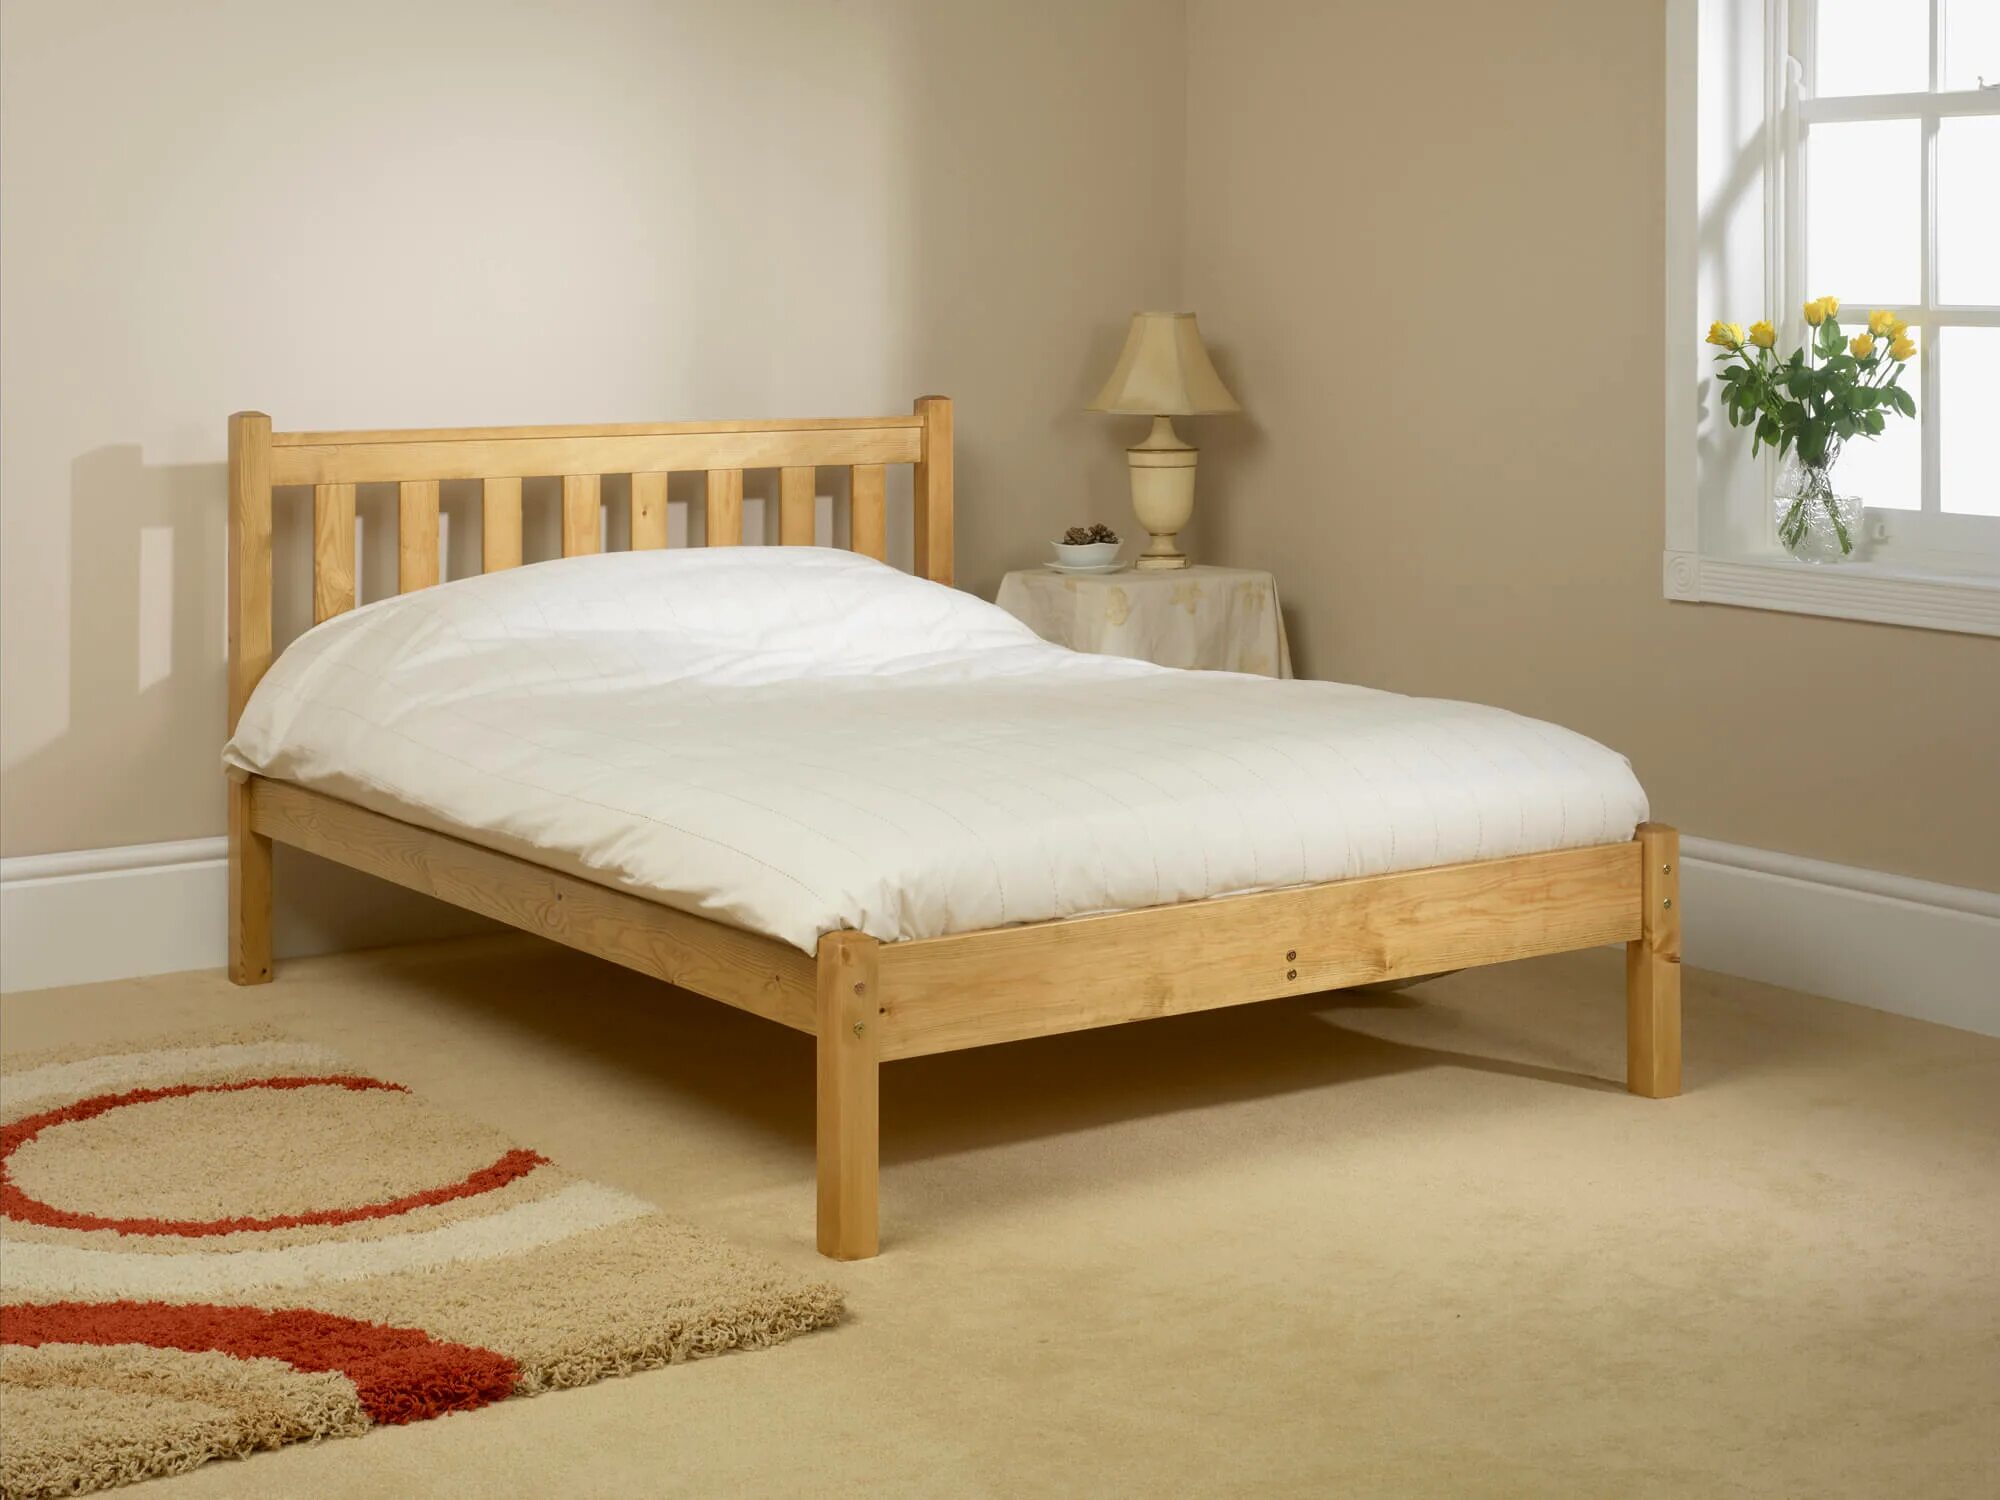 Кровать деревянная. Кровать двуспальная деревянная. Простая деревянная кровать. Купить дерев кровать в спб